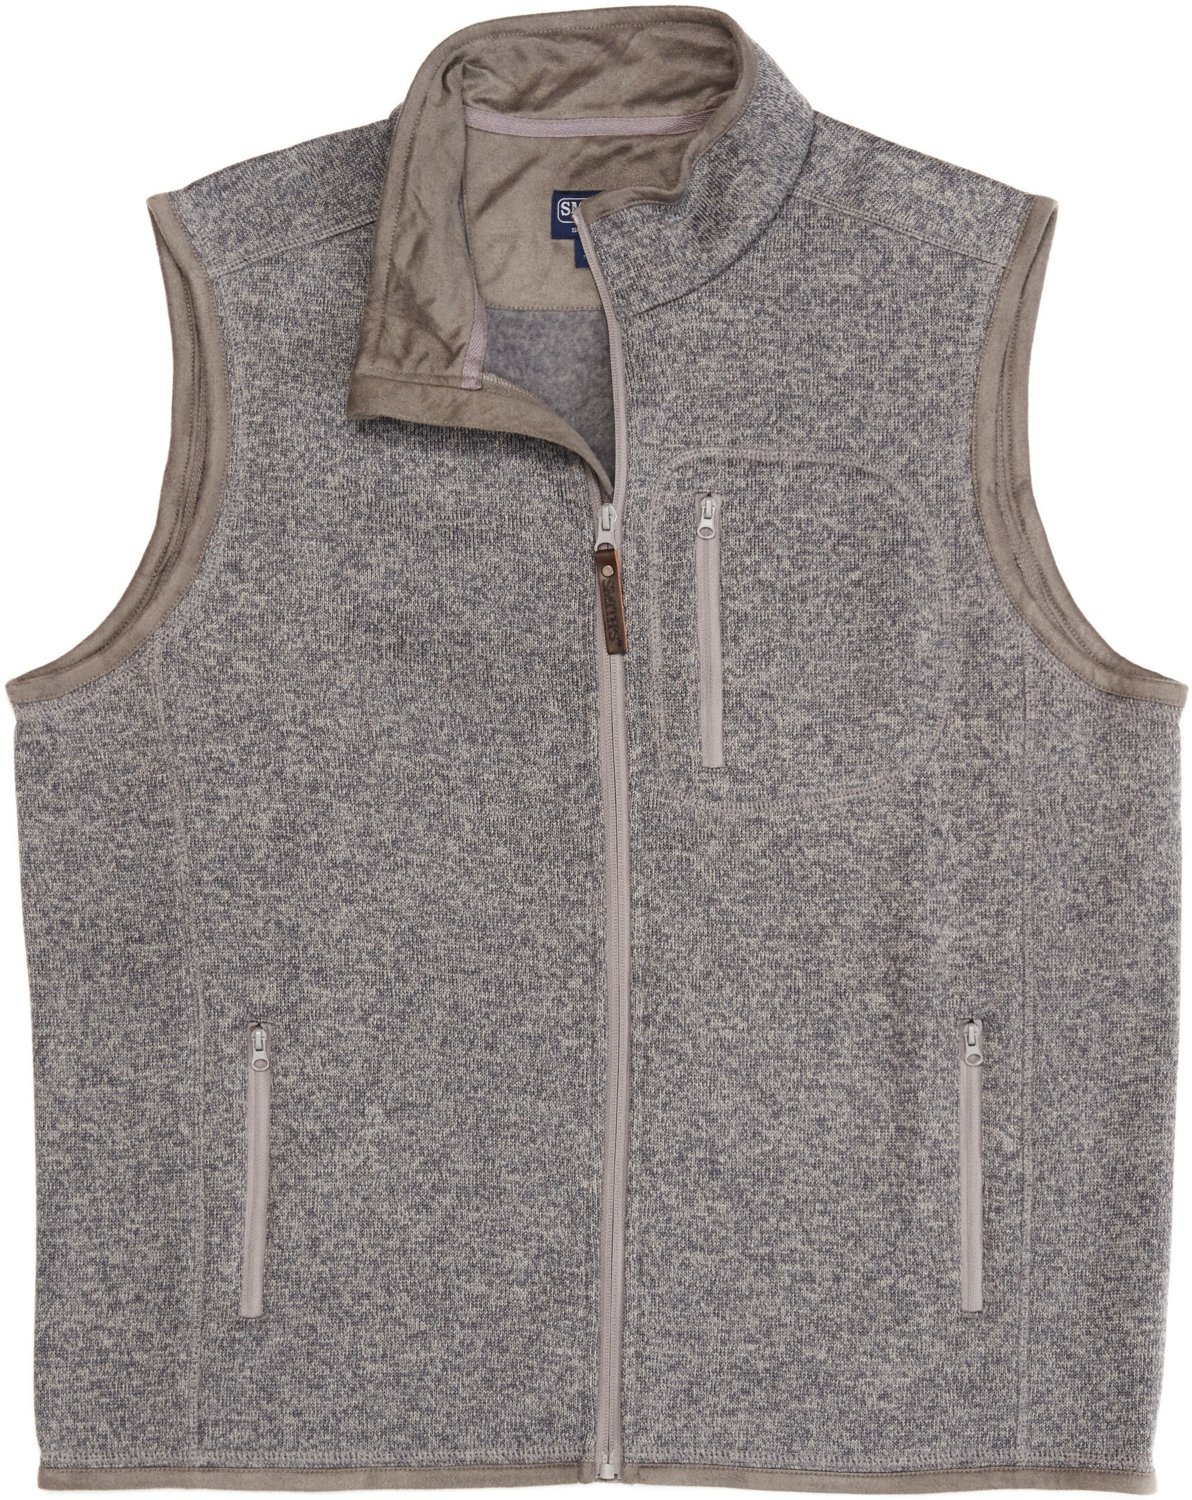 Dockers Mens Sweater Fleece Vest